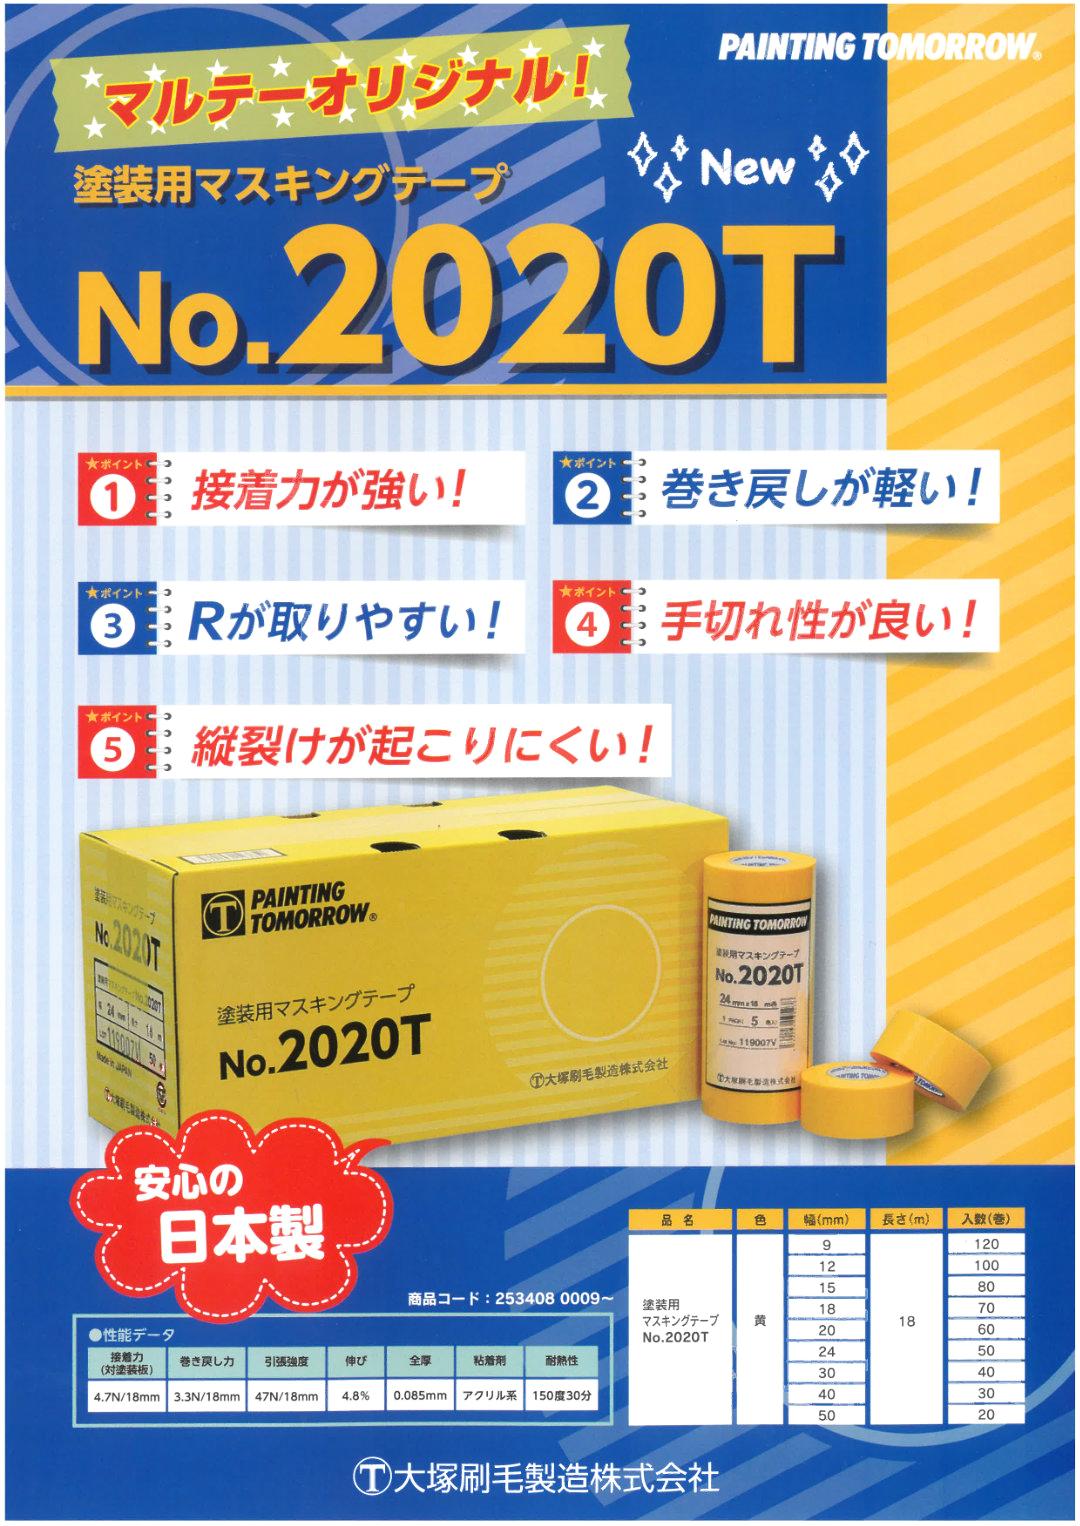 No.2020T 塗装用マスキングテープ 黄 20mm 60巻入り 2箱 セット 【送料無料】画像